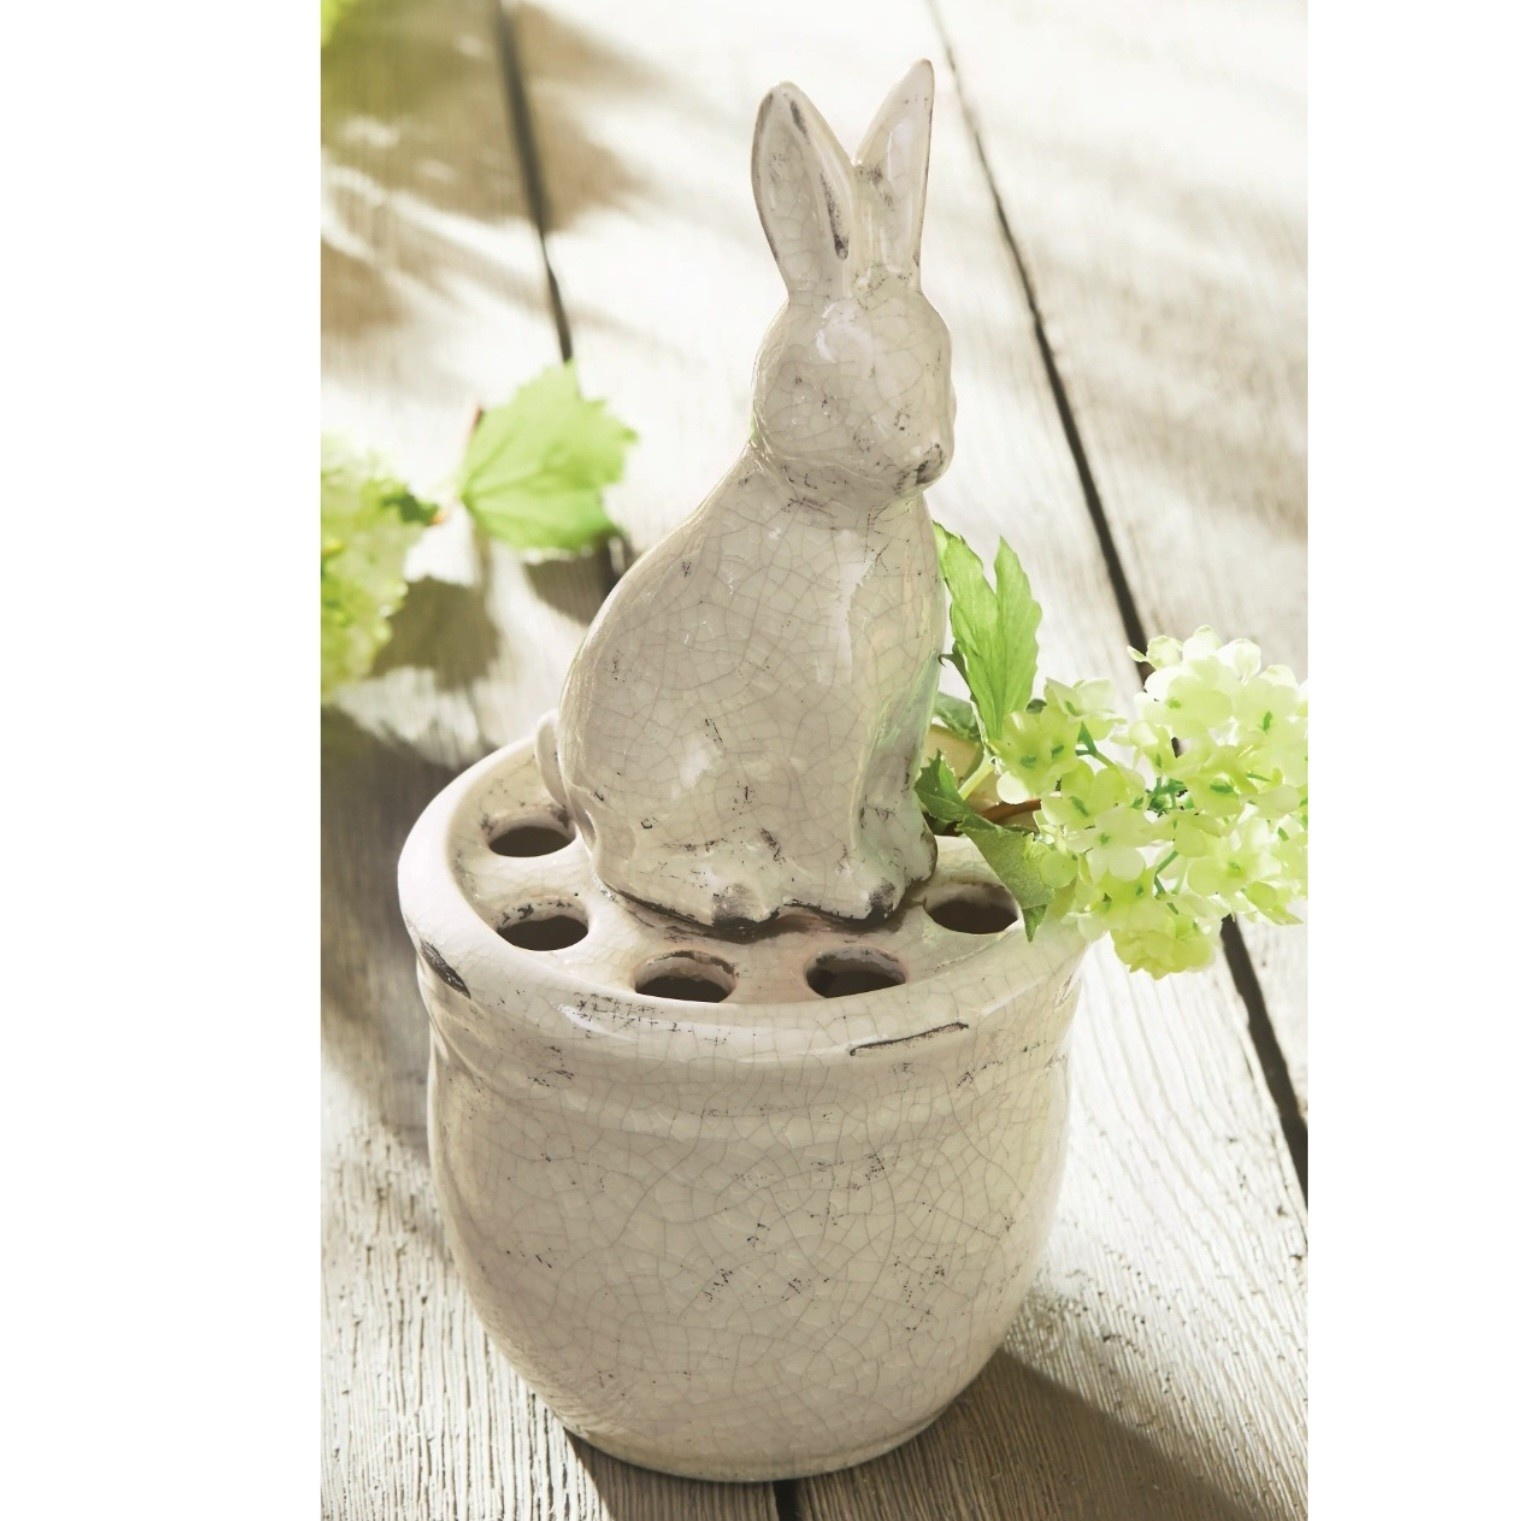 Bunny Pot Vase, 5.5 x 11.5